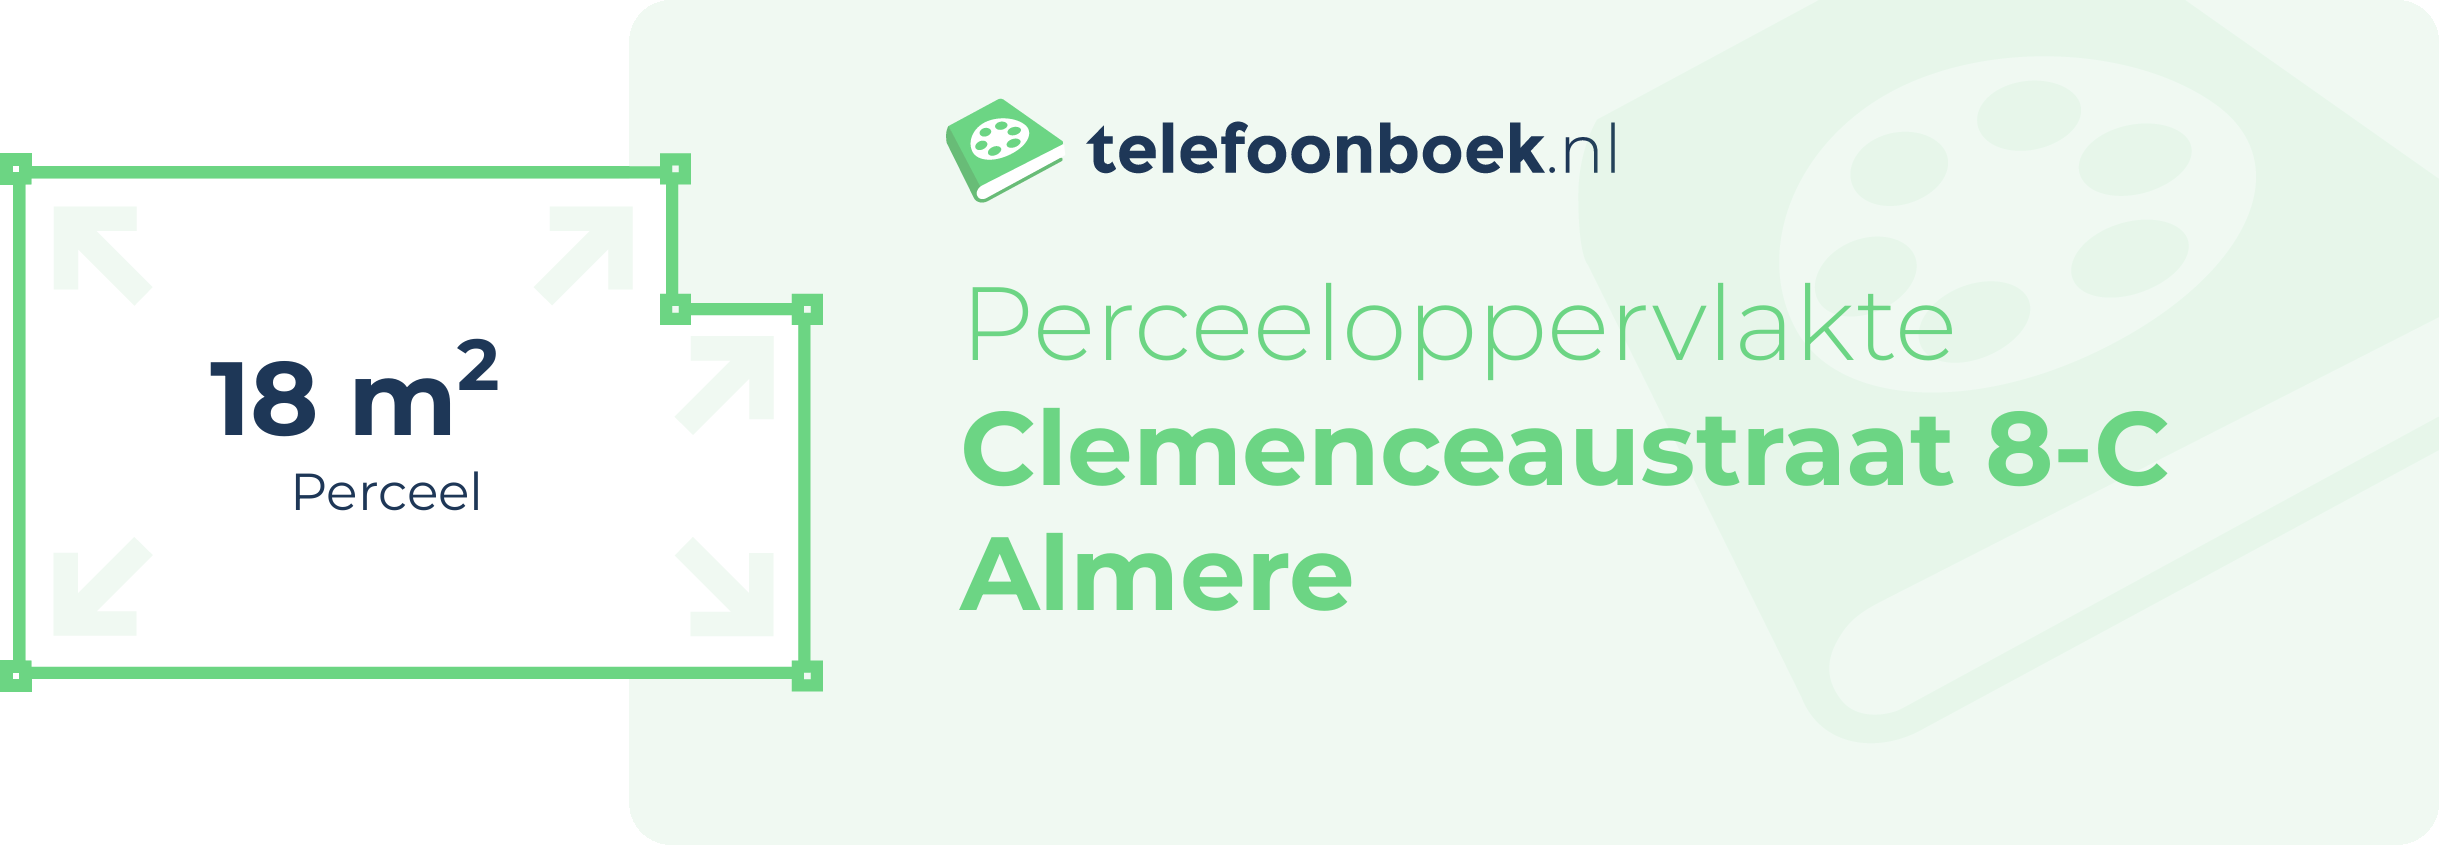 Perceeloppervlakte Clemenceaustraat 8-C Almere